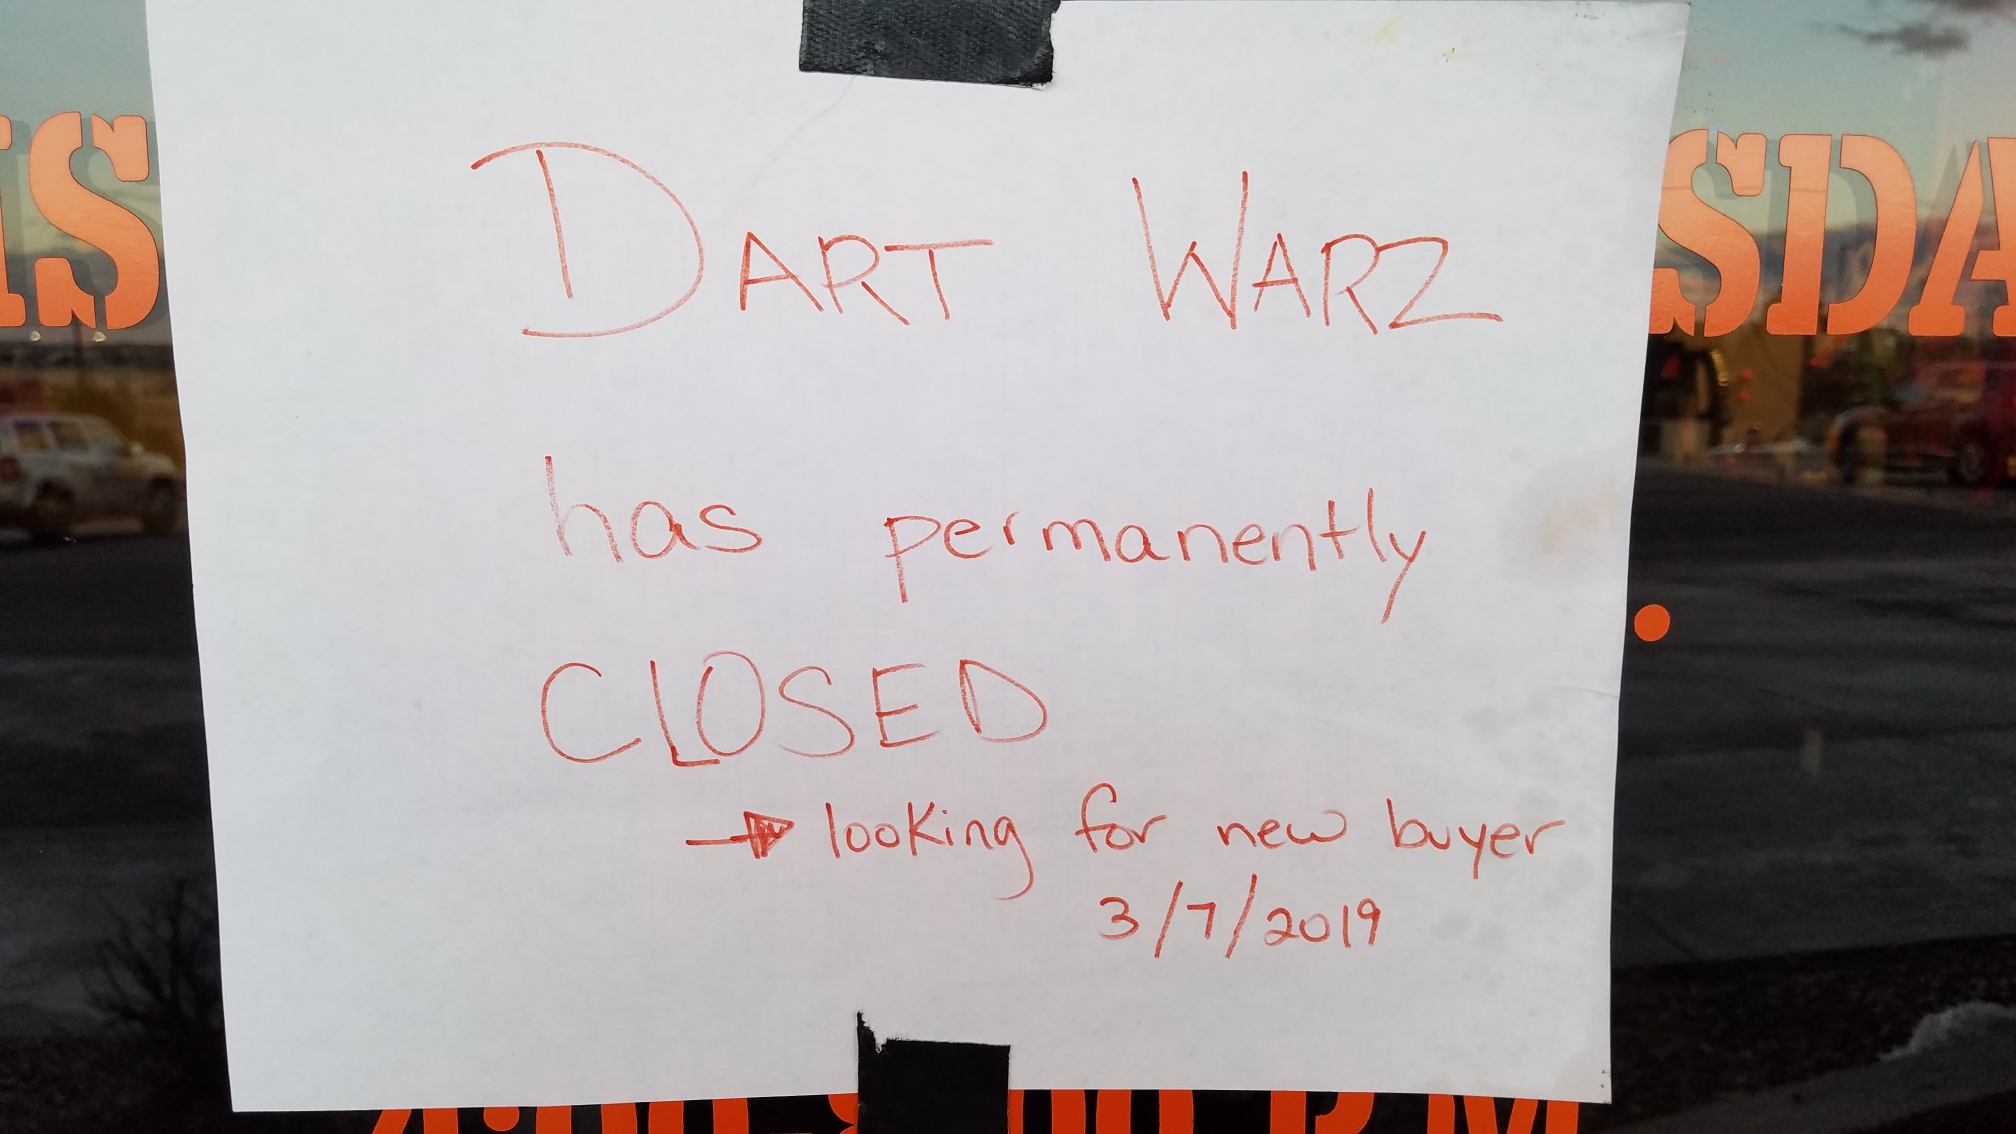 dart-warz-is-closed-so-it-seems-bsa-troop-287